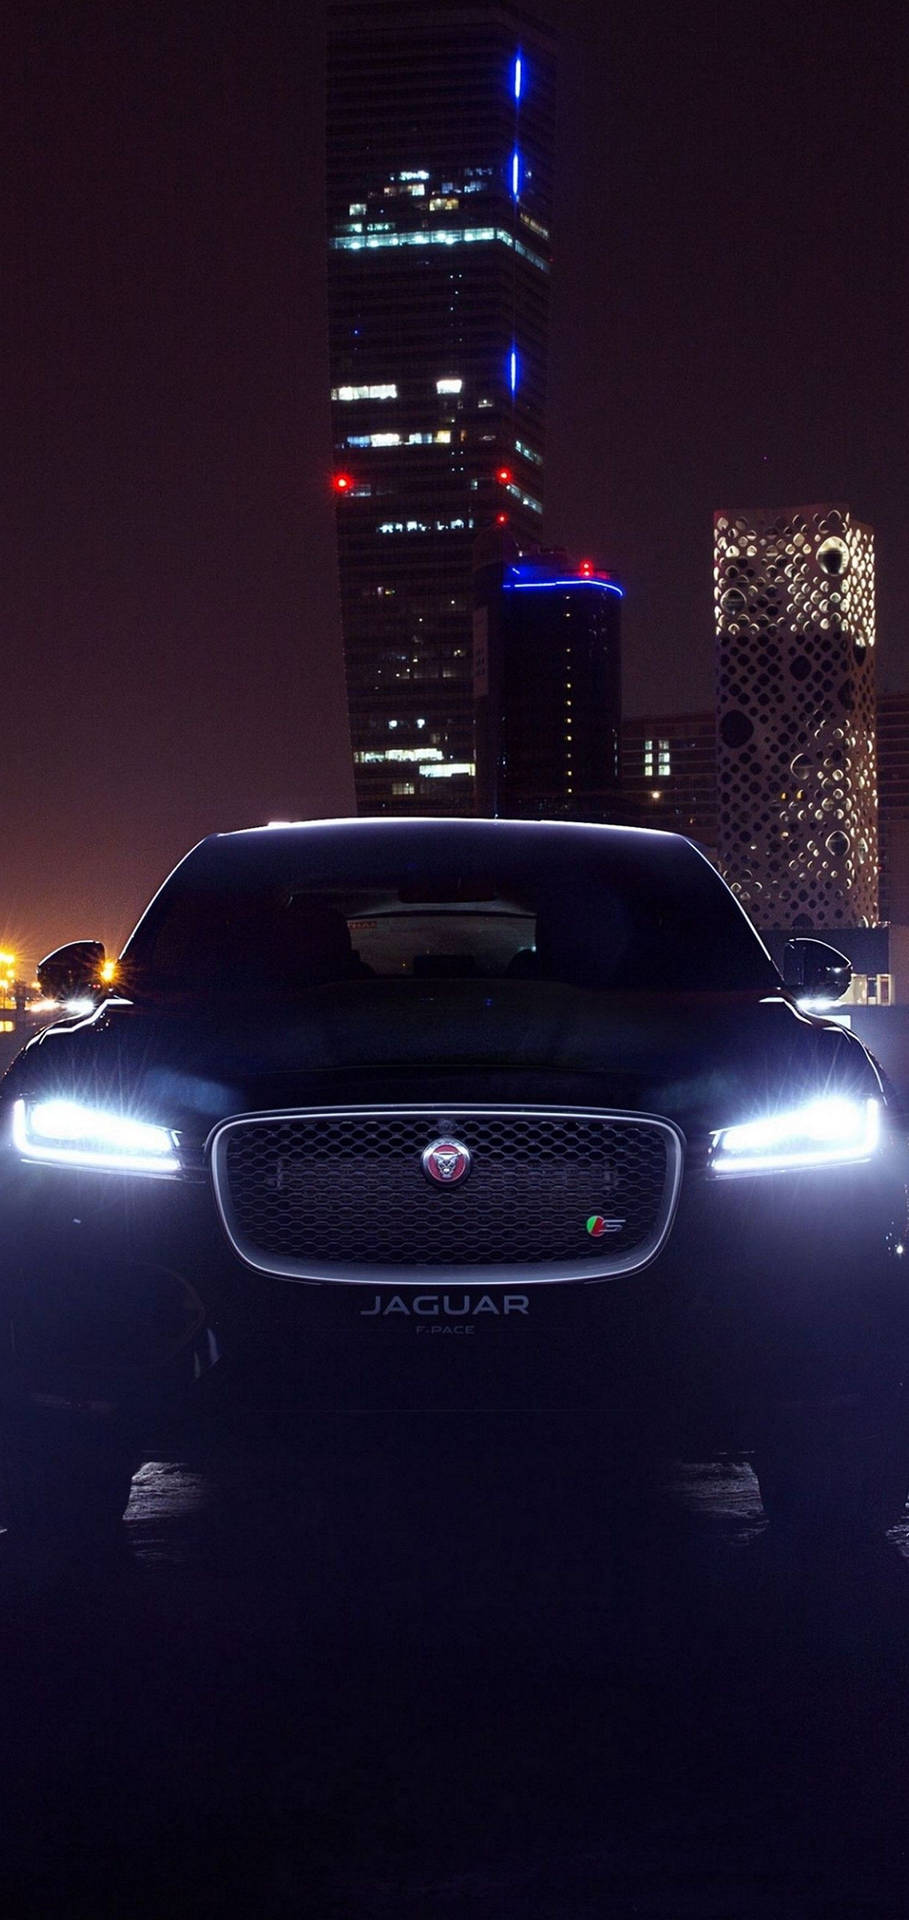 Oplev kraften og elegance af en Jaguar bil om natten. Wallpaper